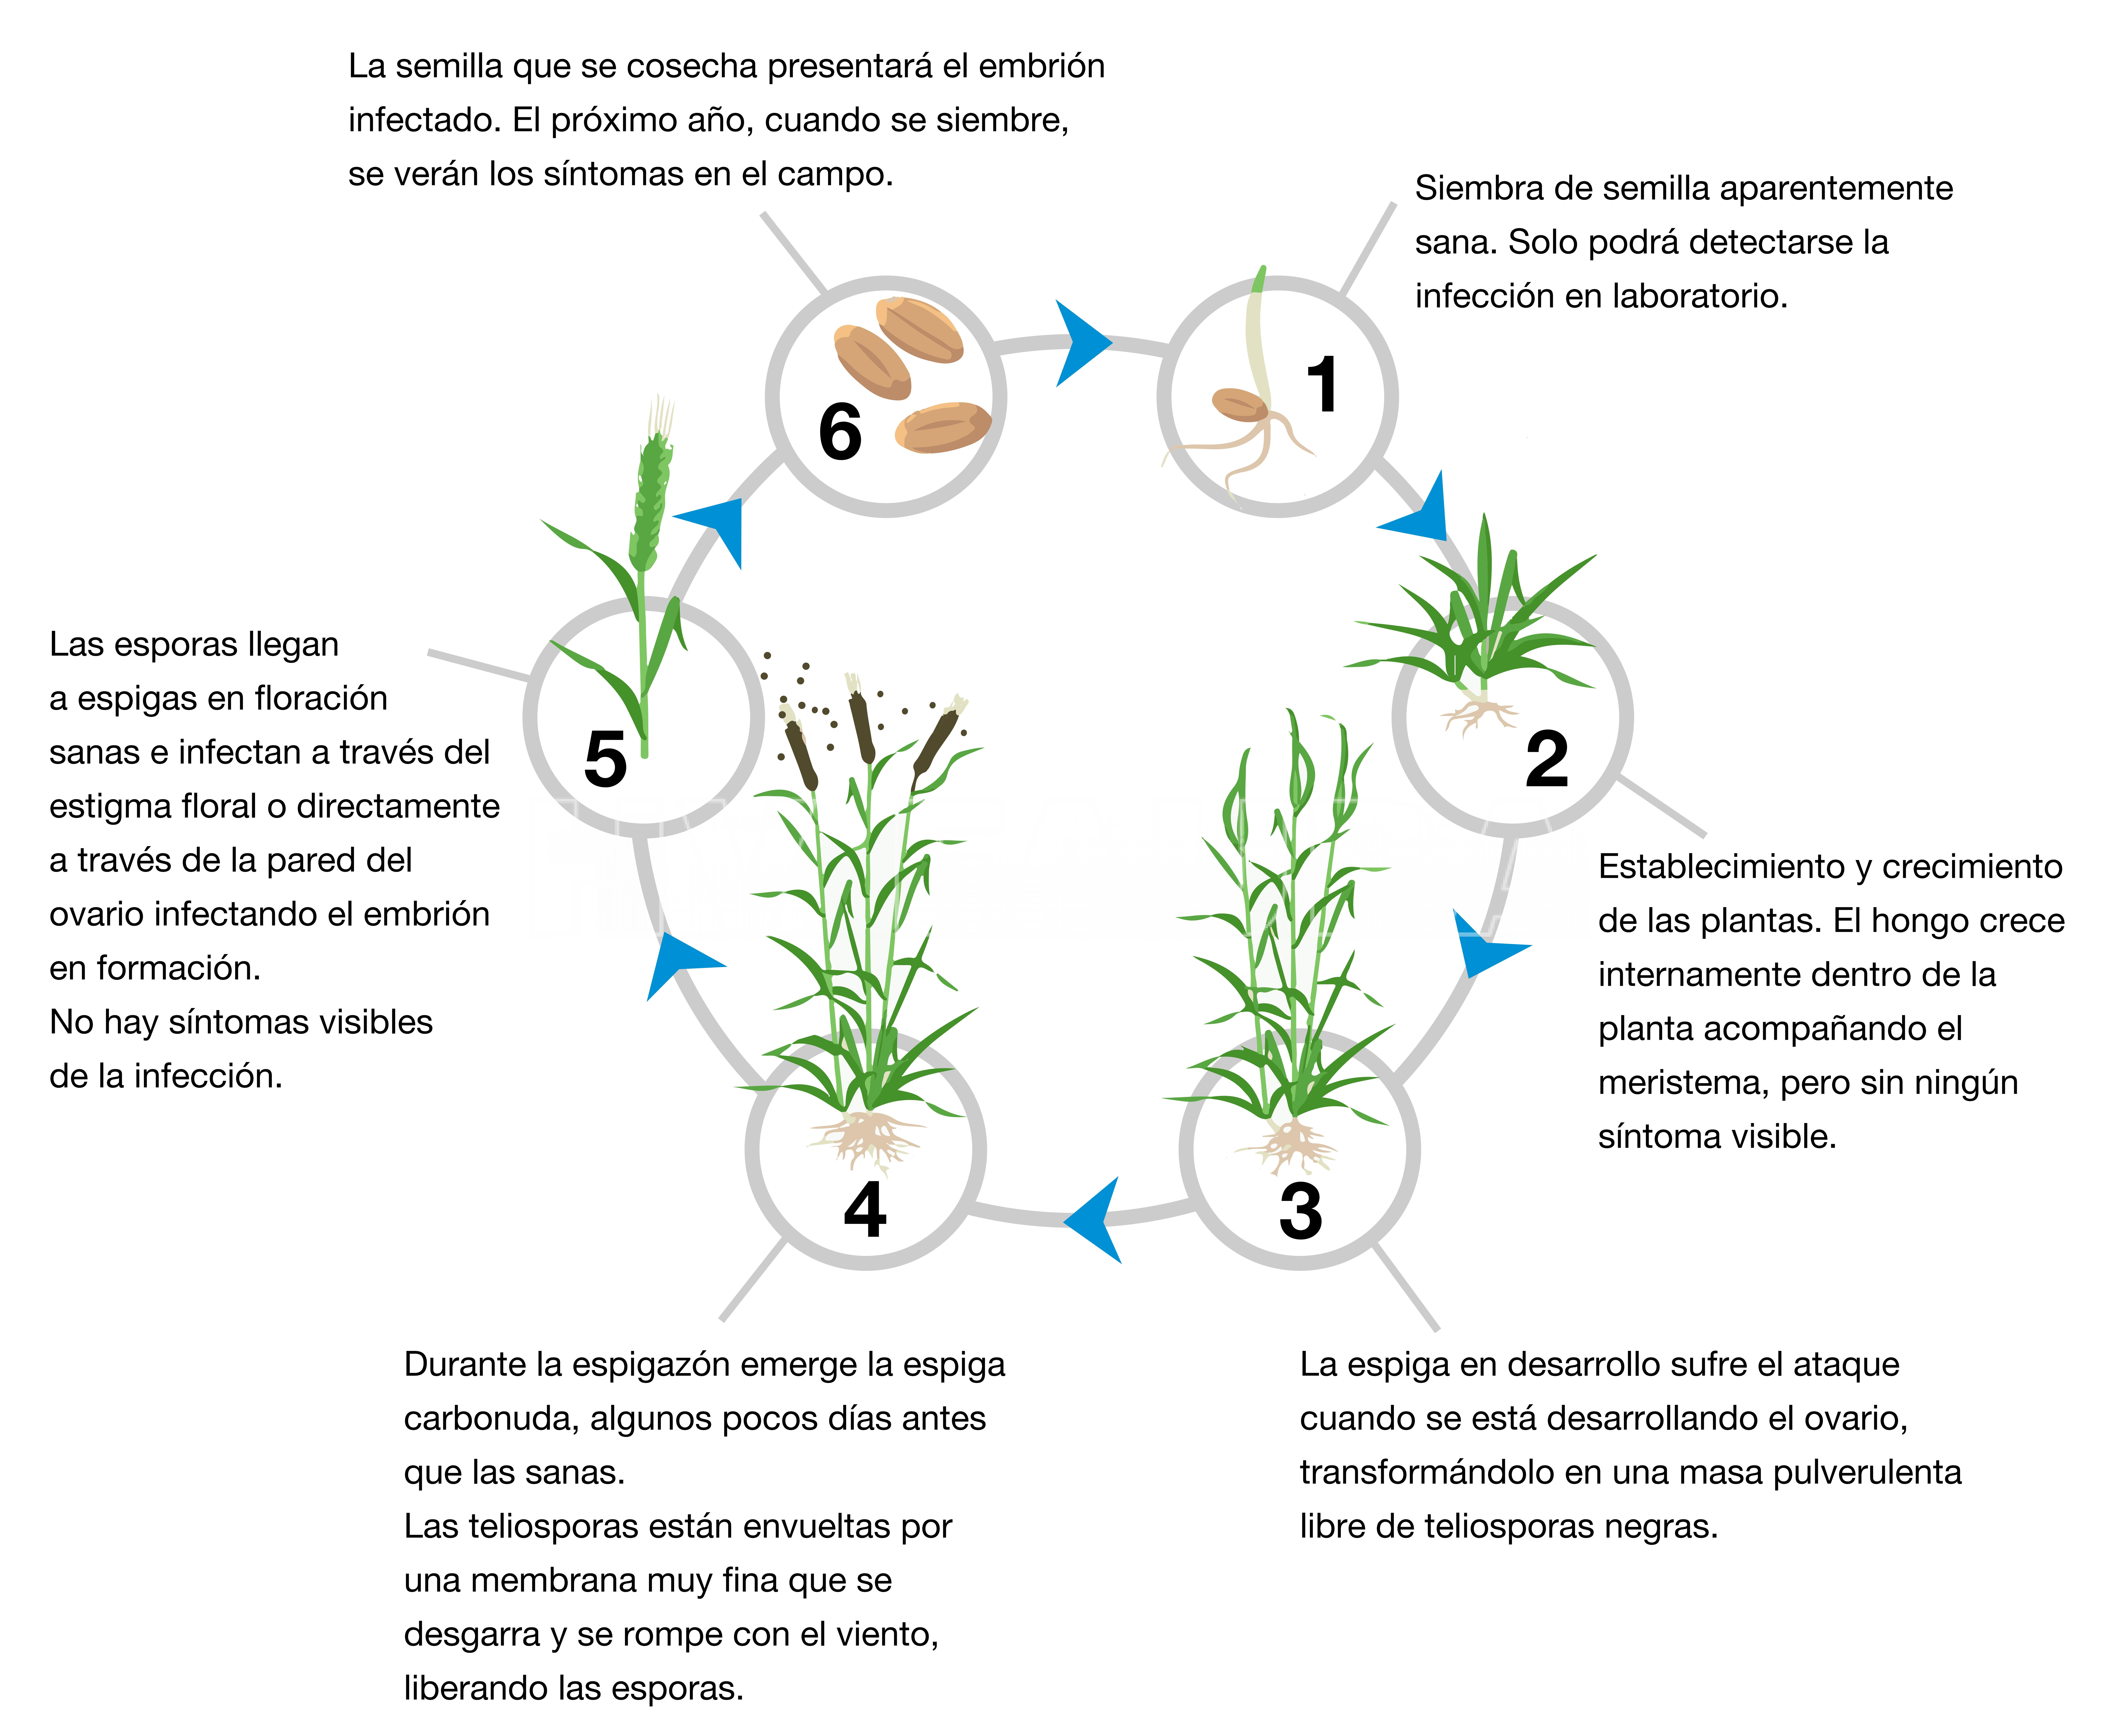 Ciclo biológico-agronómico del carbón volador de los cereales (Ustilago spp.). Fuente: Carmona y Sautua, 2020.